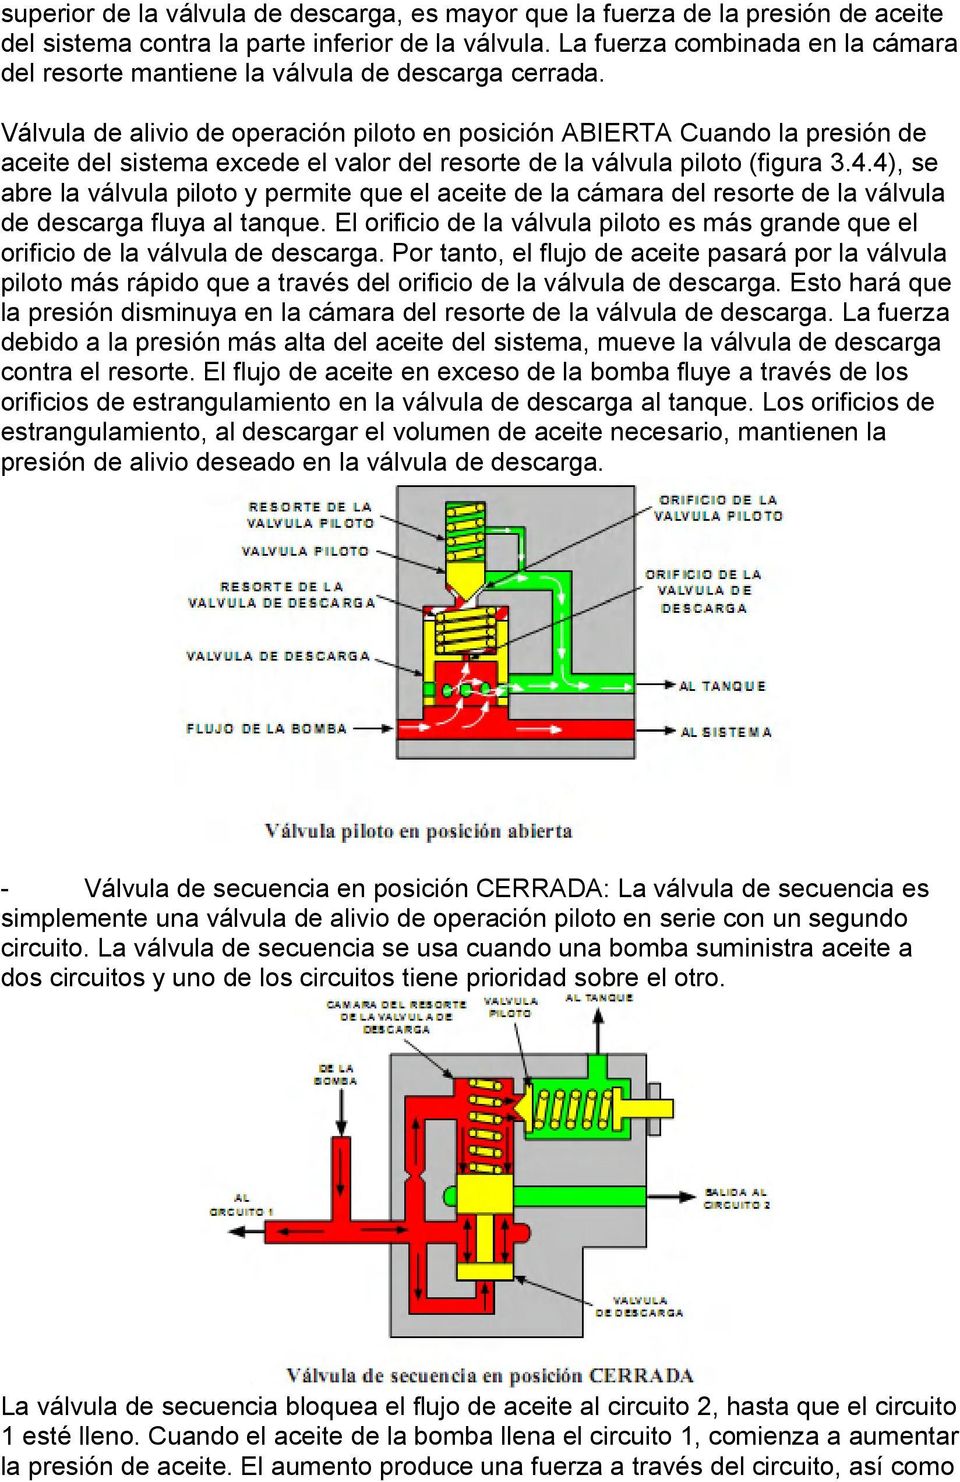 Válvula de alivio de operación piloto en posición ABIERTA Cuando la presión de aceite del sistema excede el valor del resorte de la válvula piloto (figura 3.4.